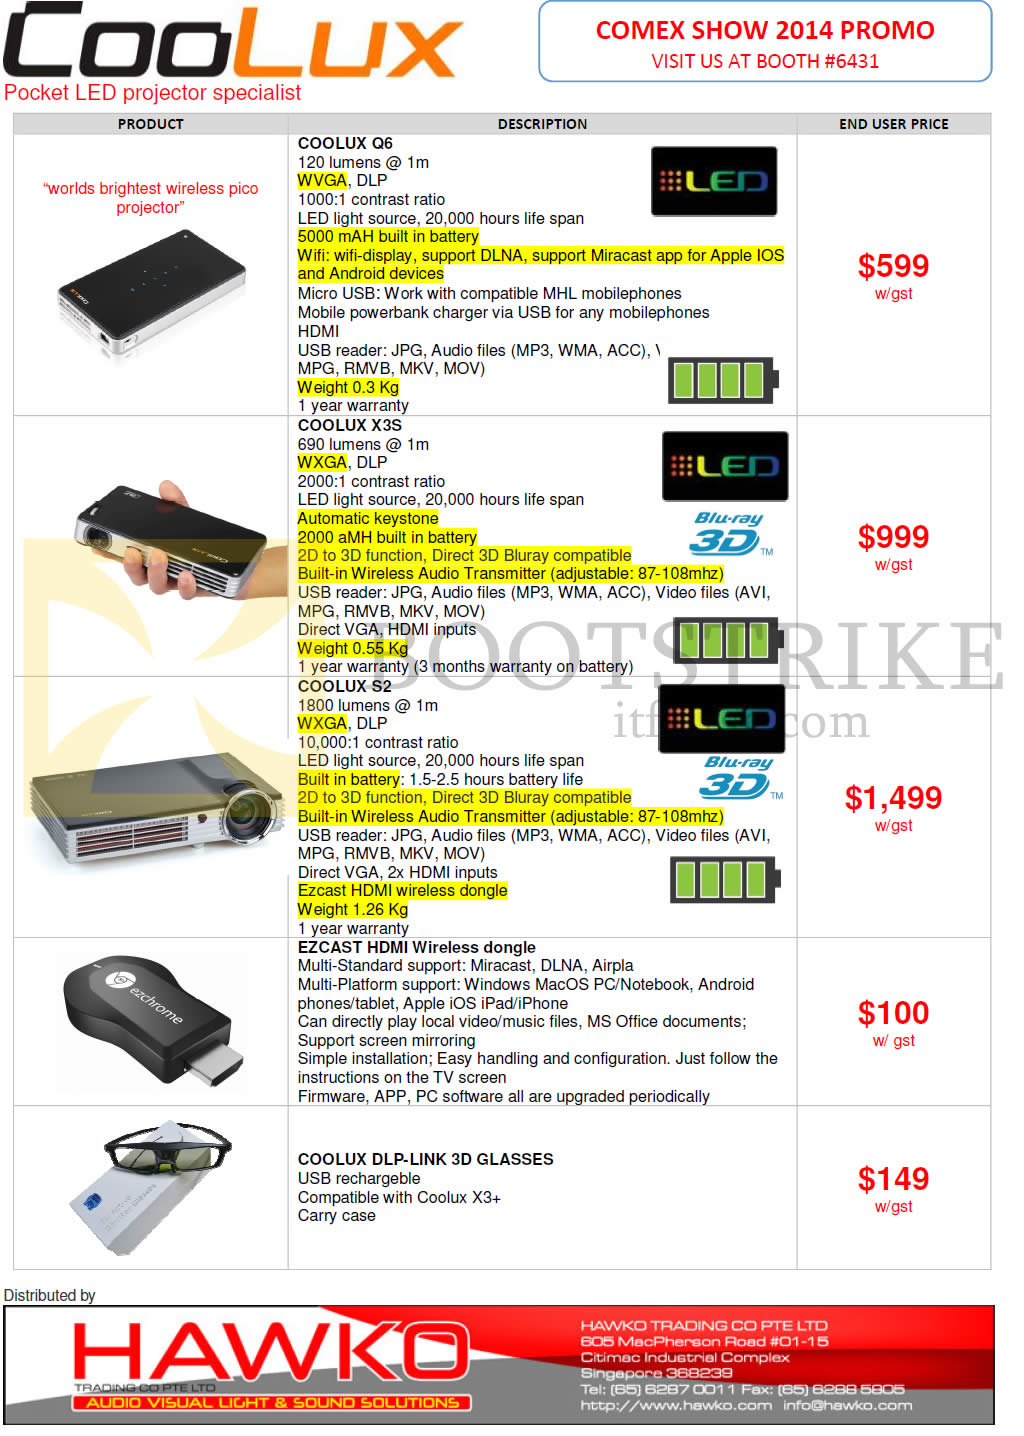 COMEX 2014 price list image brochure of Hawko Coolux Pocket LED Projectors Coolux Q6, Coolux X3S, Coolux S2, Coolux DLP-Link 3D Glasses